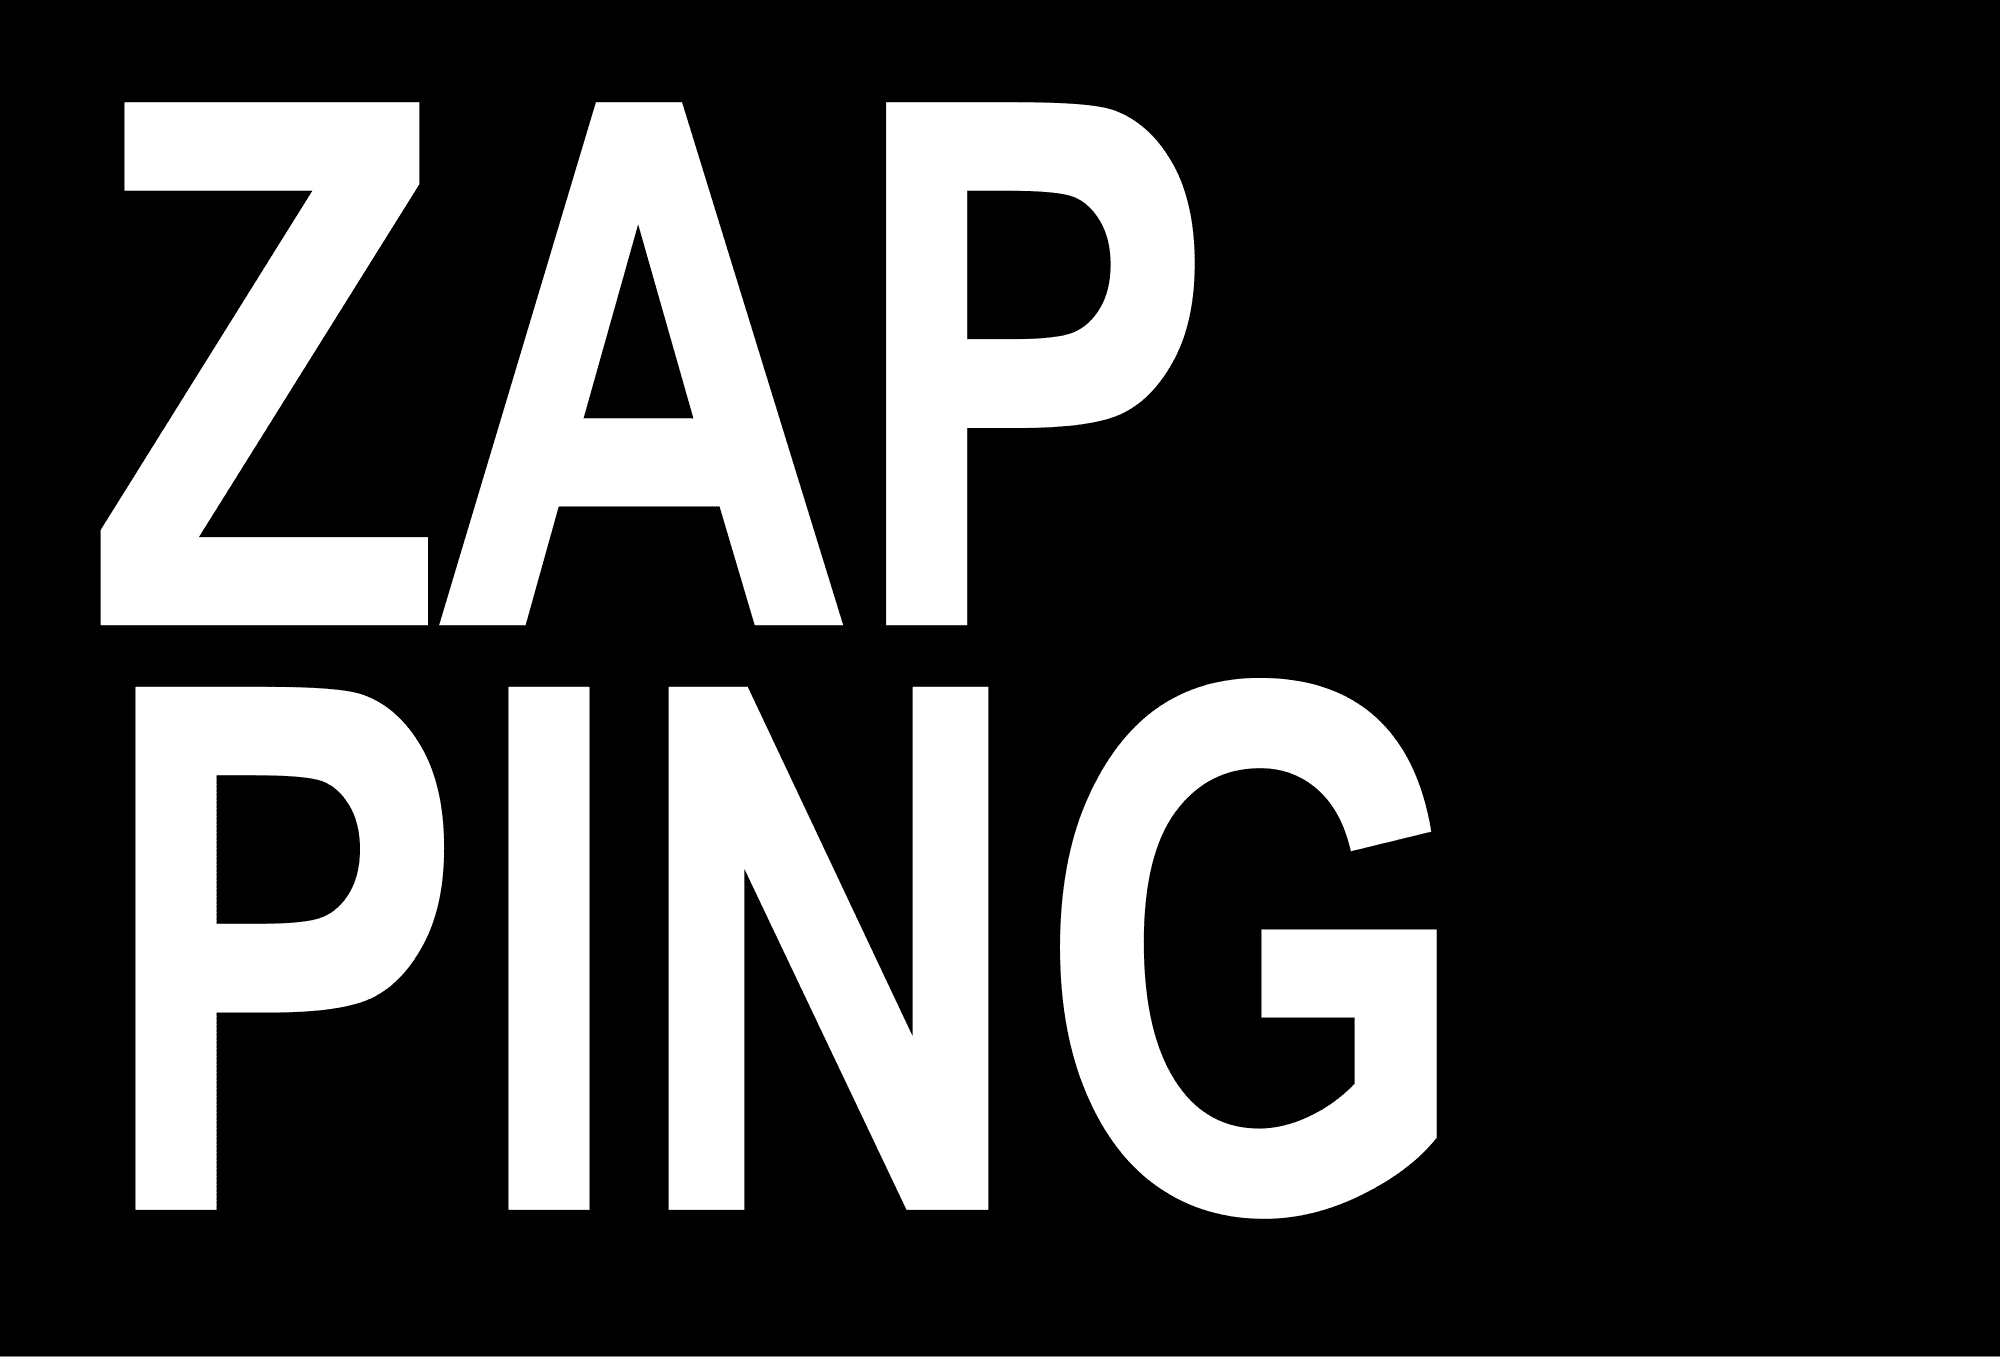 Licencie-t-on facilement le réalisateur du zapping ?